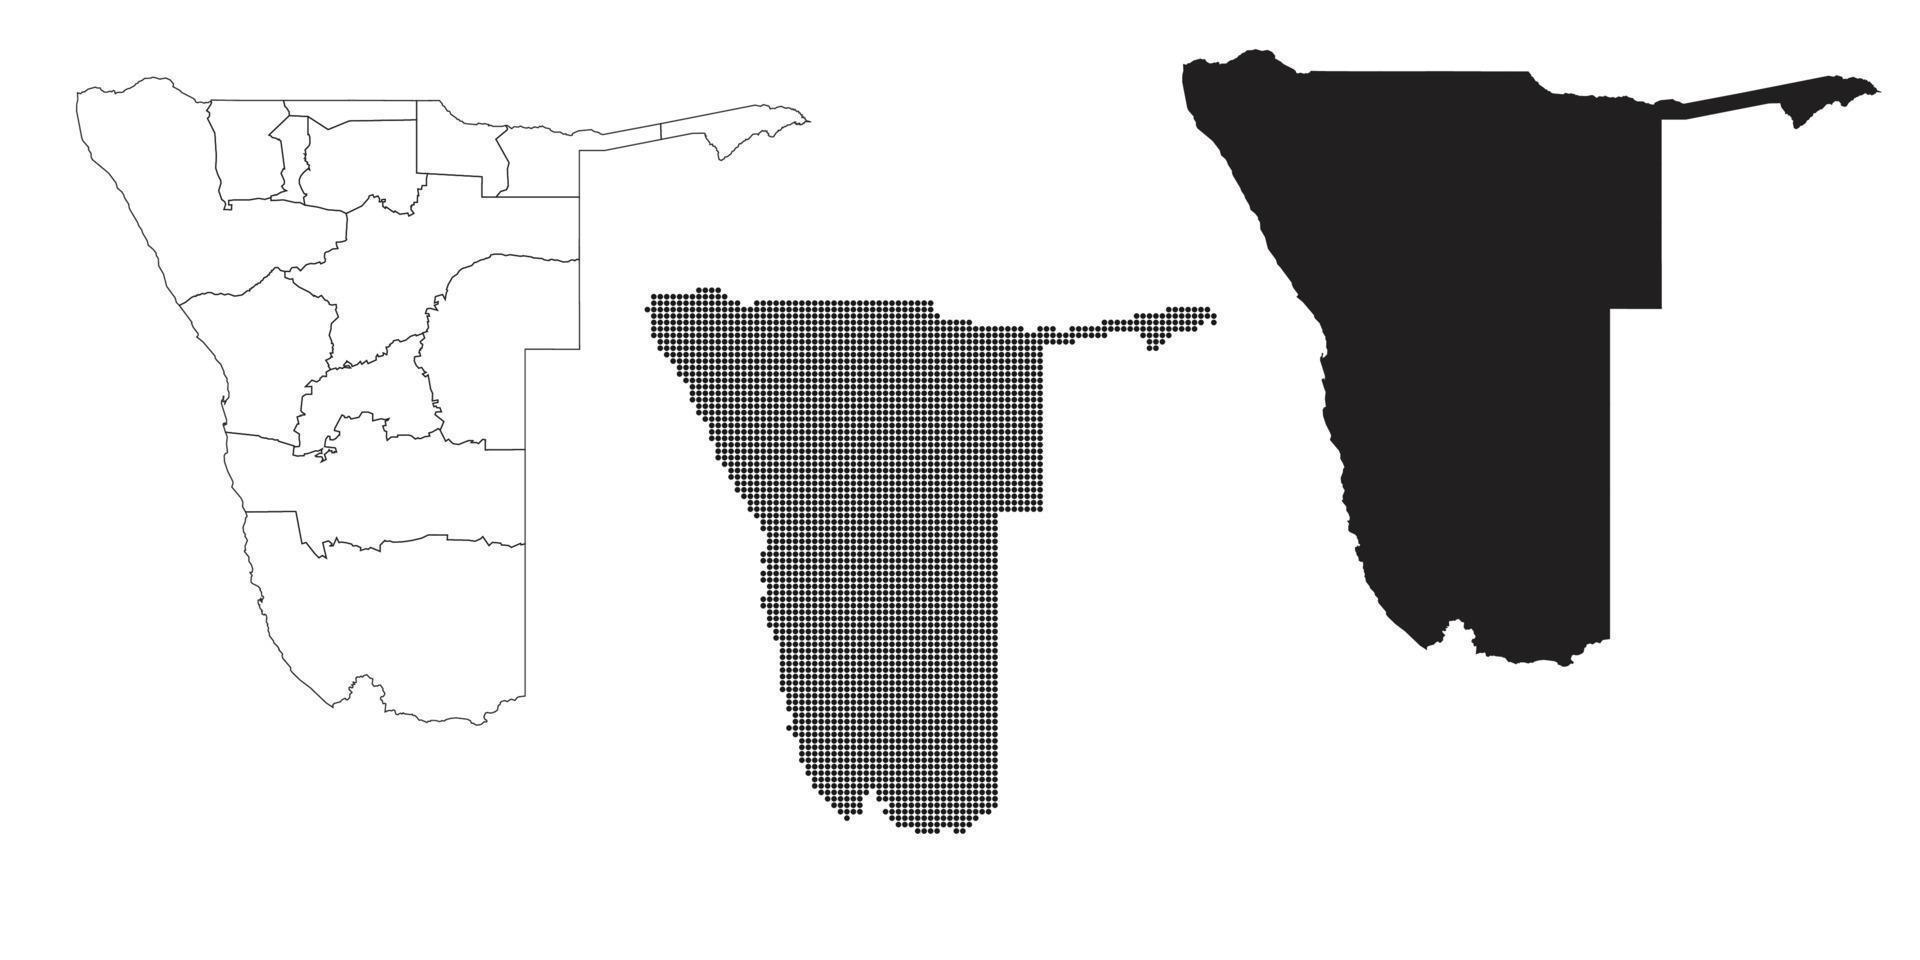 mapa da namíbia isolado em um fundo branco. vetor